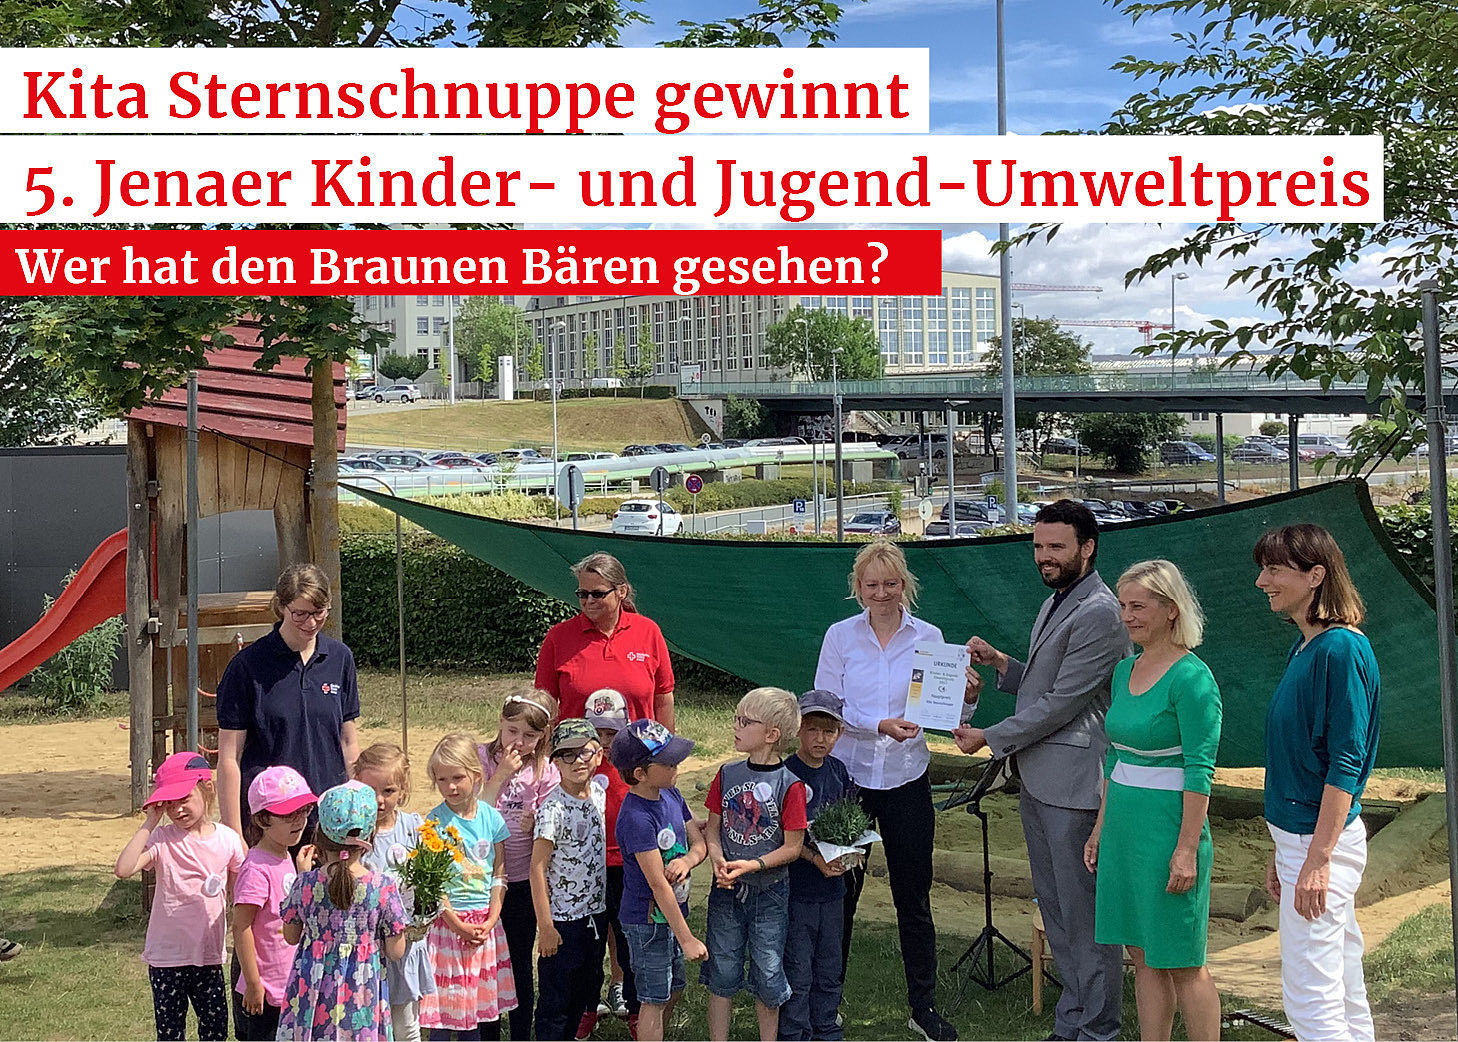 DRK Kita Sternschnuppe gewinnt 5. Jenaer Kinder- und Jugend-Umweltpreis